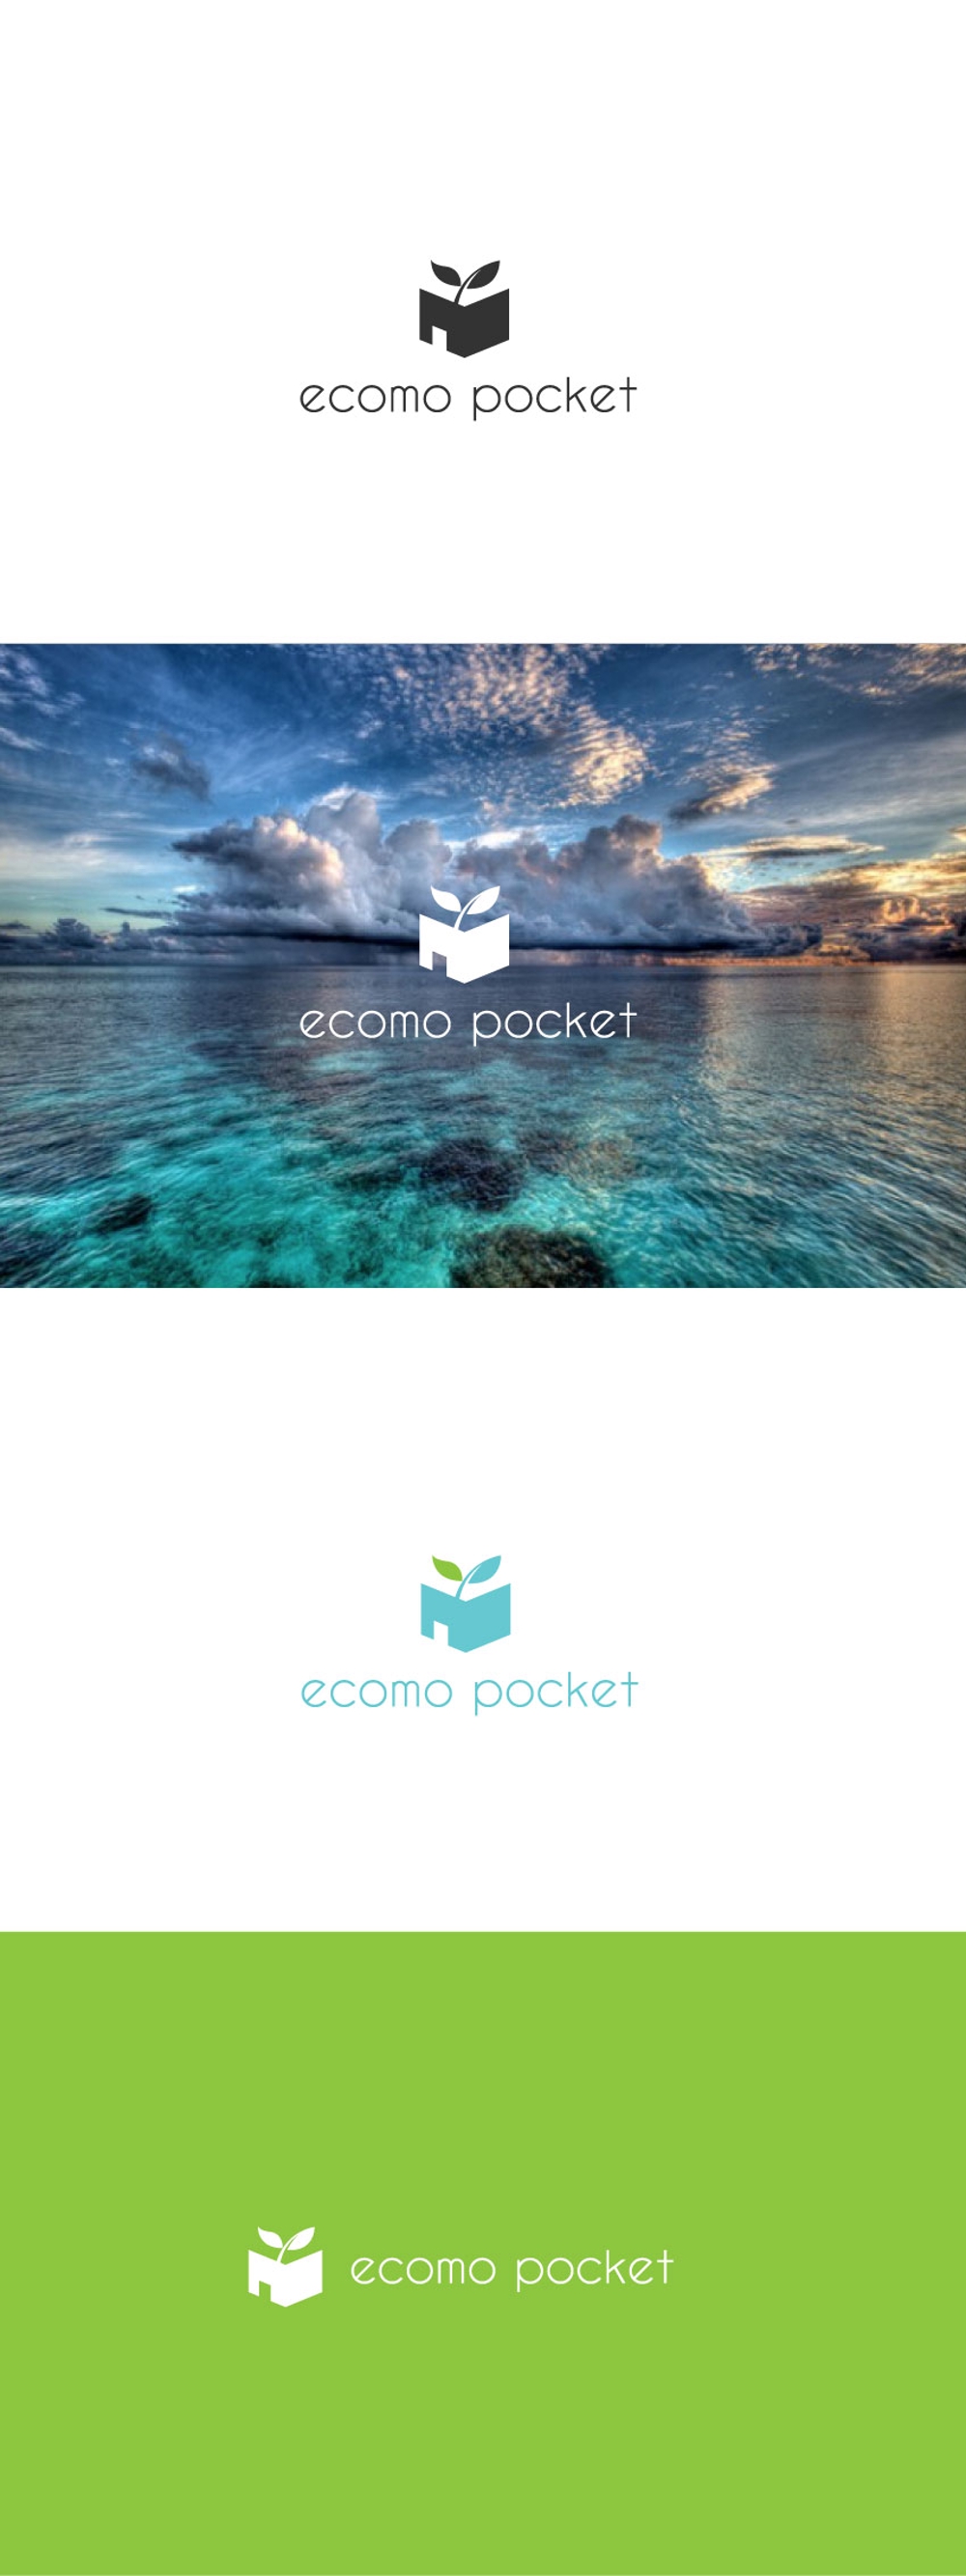 ecomo-pocket-02.jpg